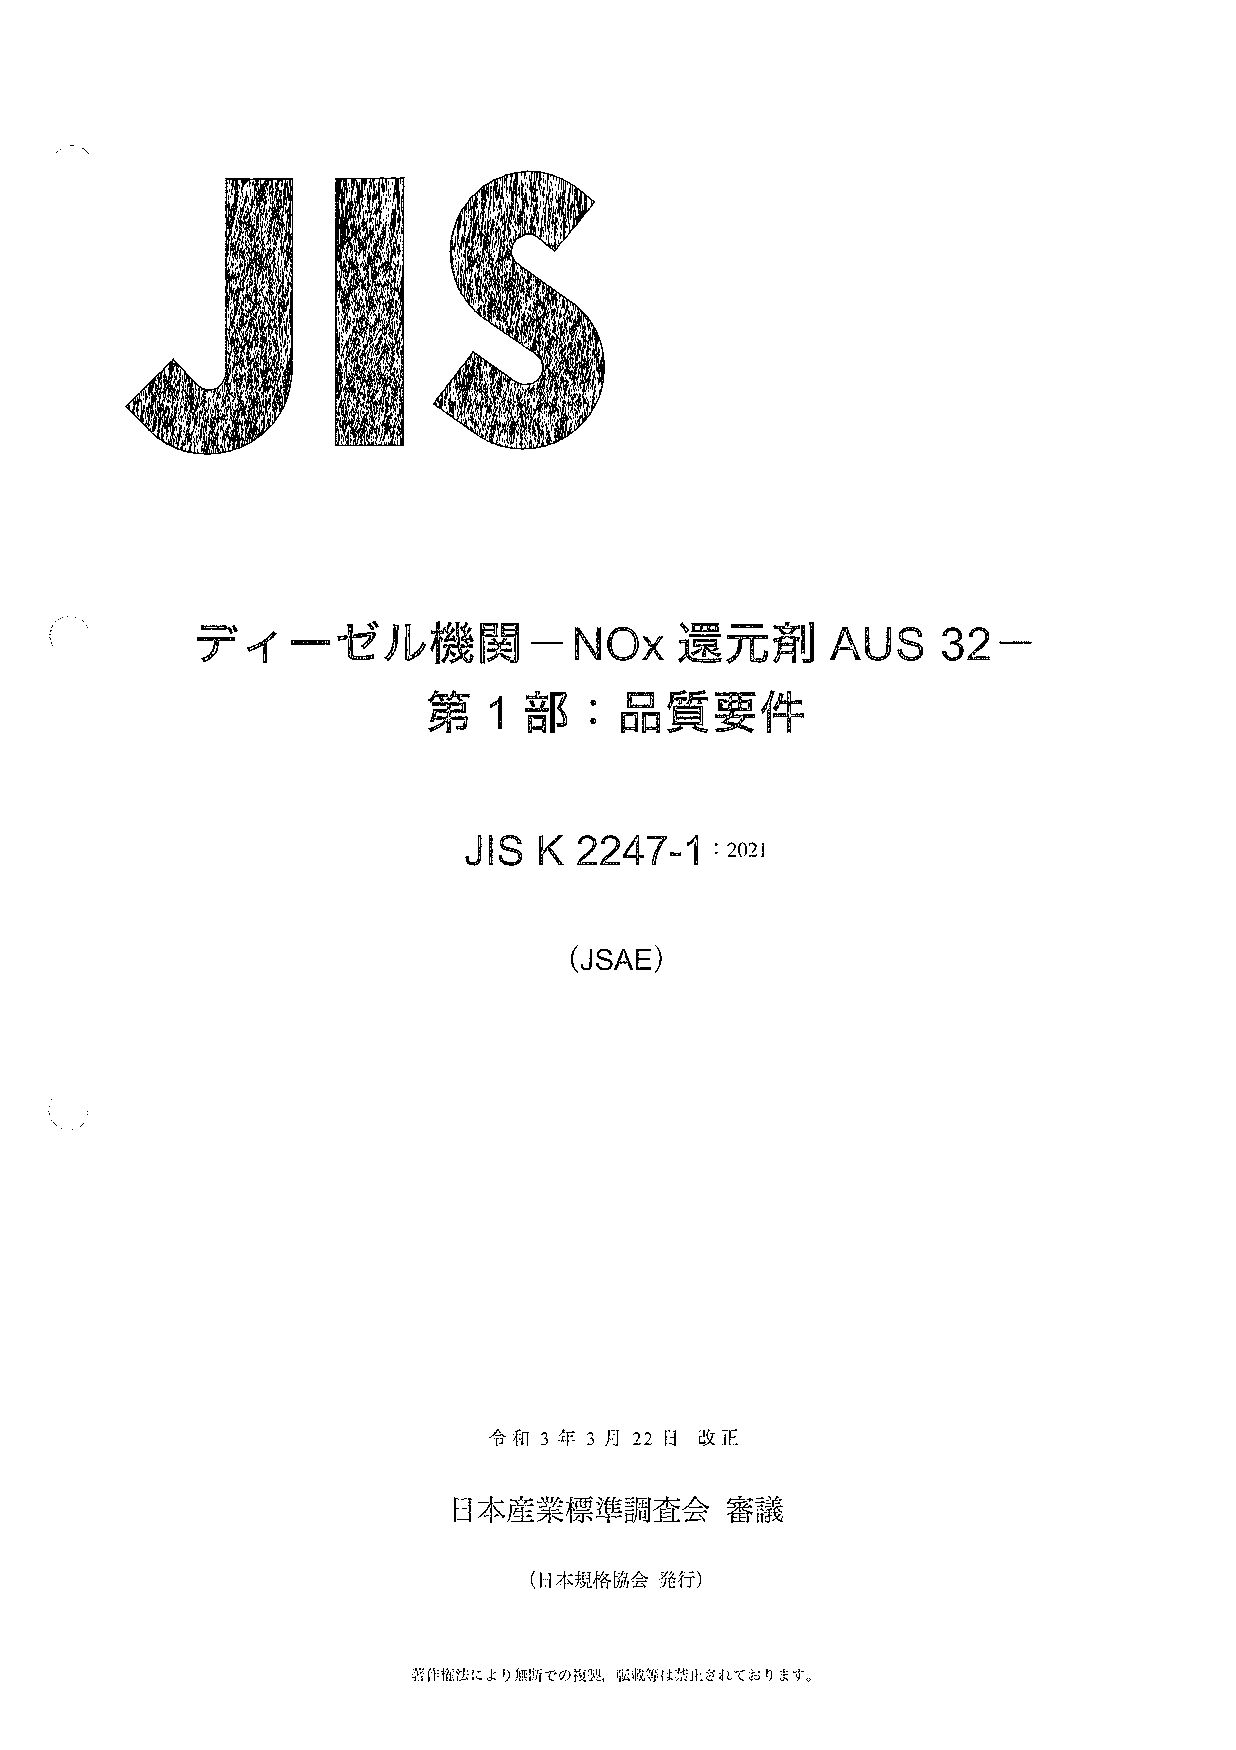 JIS K 2247-1:2021封面图